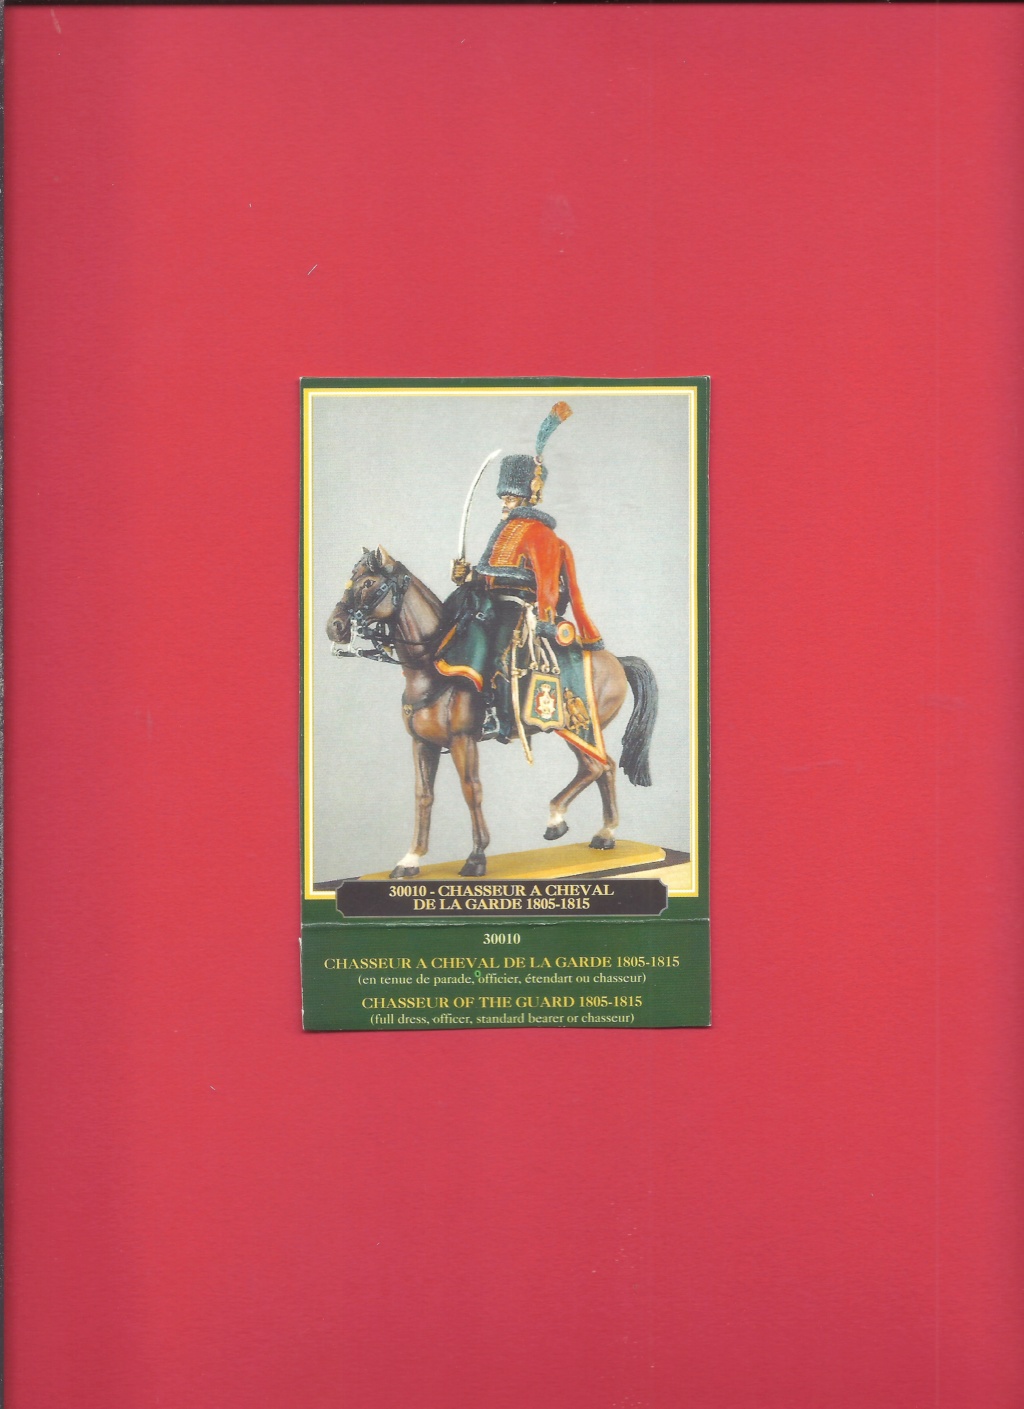 [HISTOREX] Régiment des Chasseurs à cheval de la Garde Impérial 1804 - 1815 1/30ème Réf 30010 Histo190